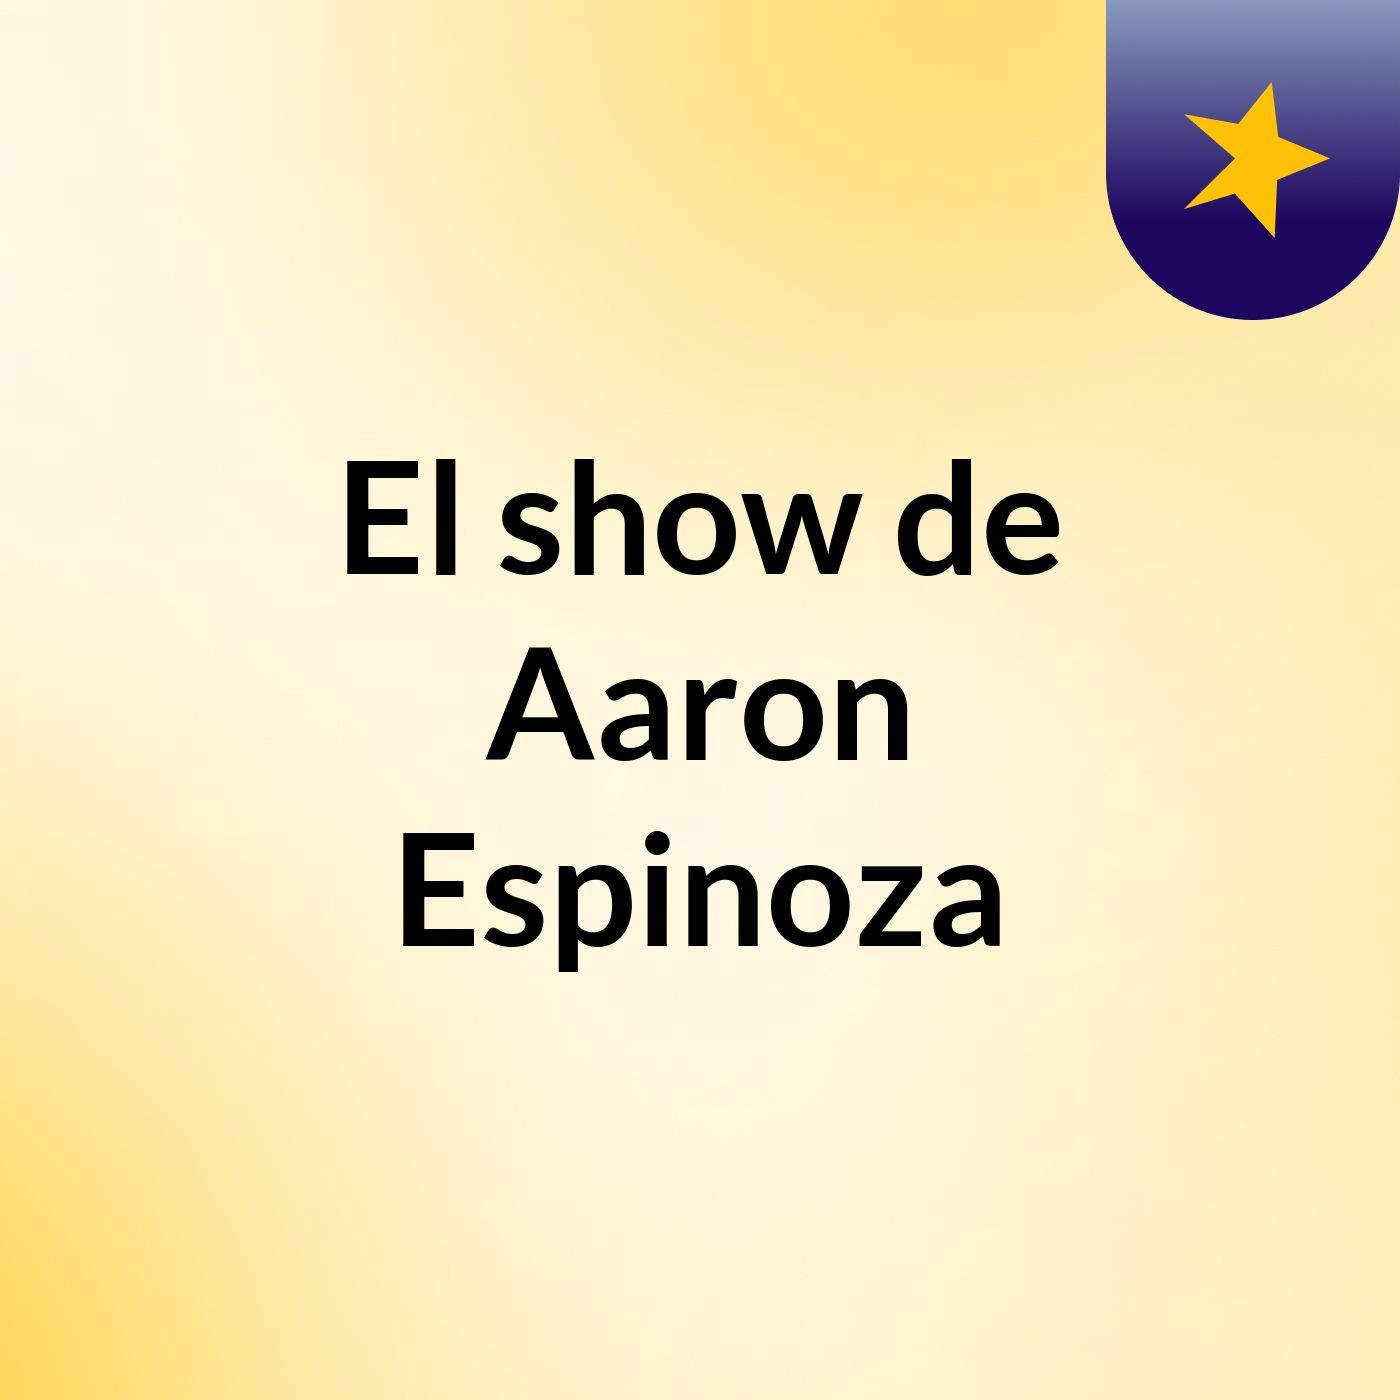 El show de Aaron Espinoza